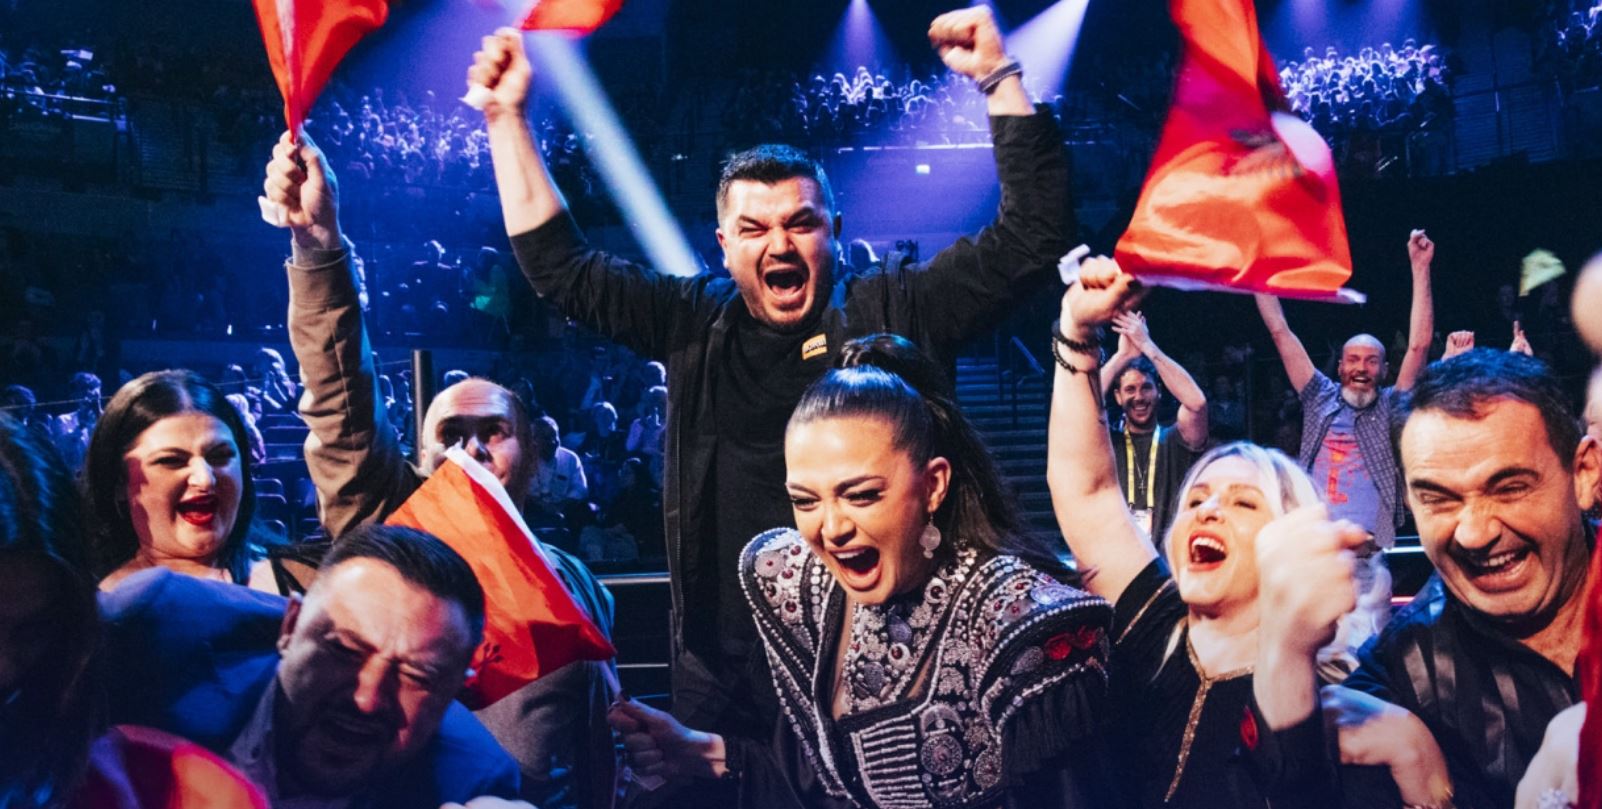 entain công bố tỉ lệ cược cuộc thi eurovision